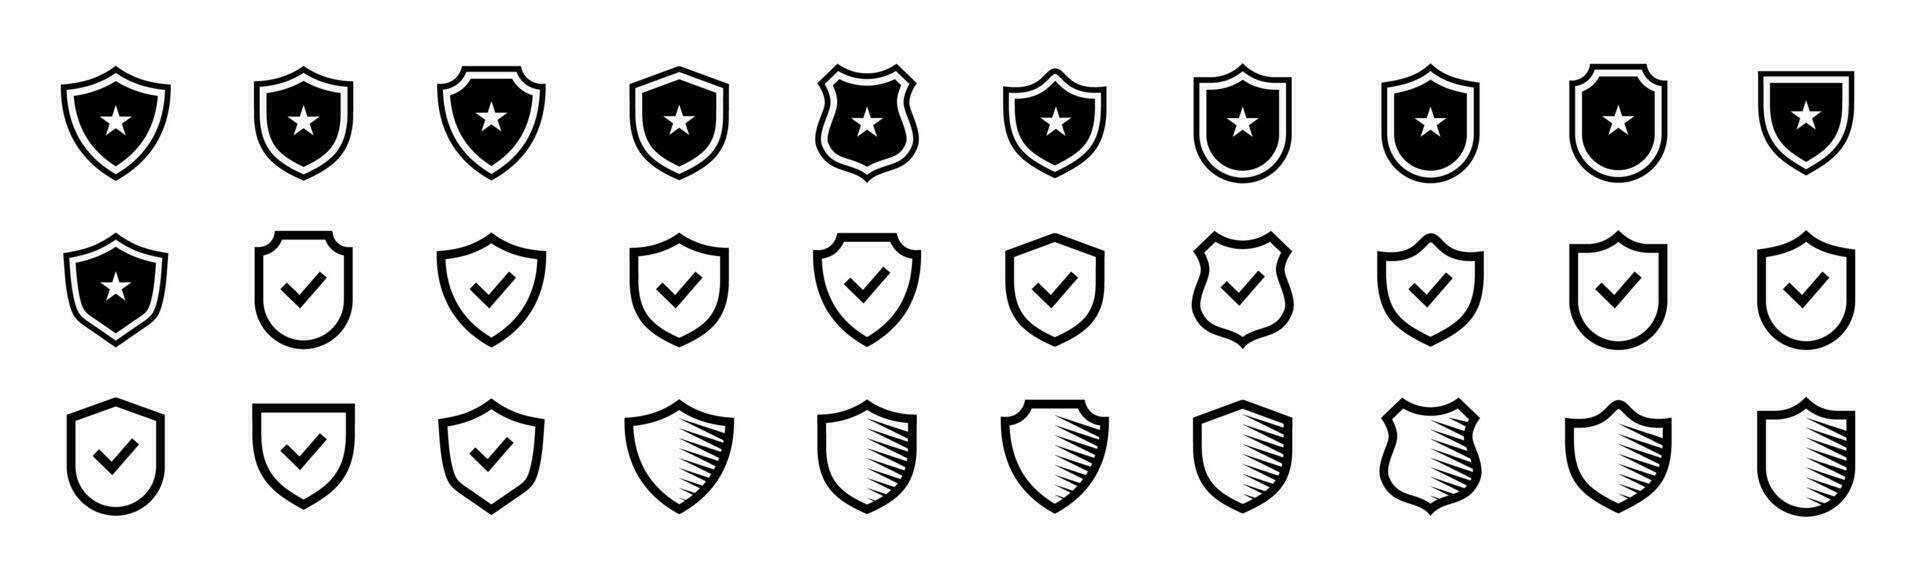 coleção do escudo ícones, defesa, prevenção, proteção, editável e redimensionável eps 10. vetor